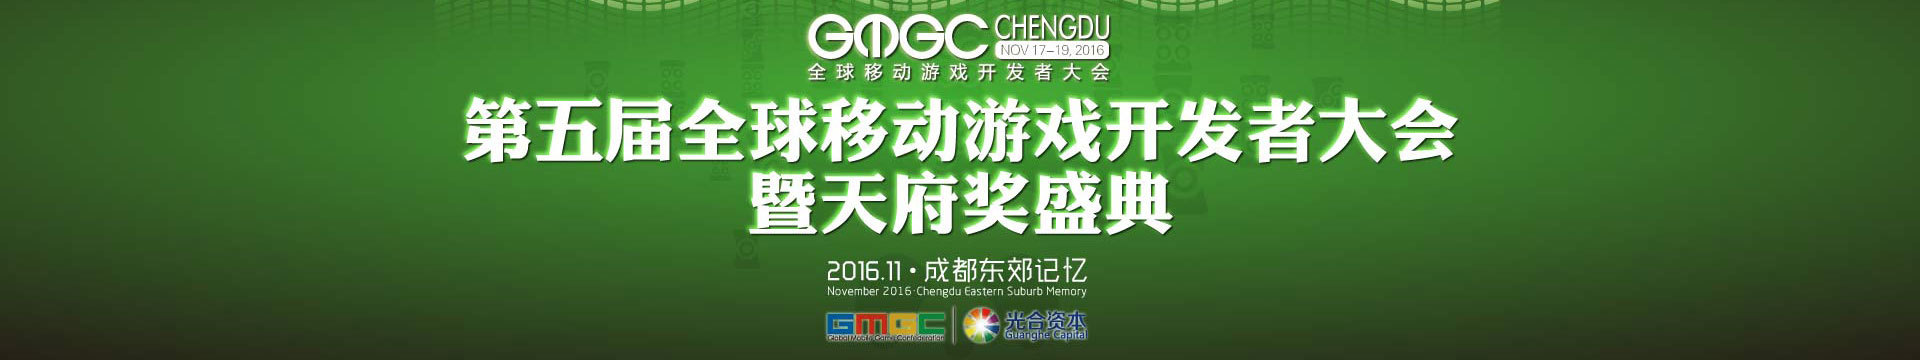 第五届全球移动游戏开发者大会暨天府奖盛典（ GMGC 成都 ）